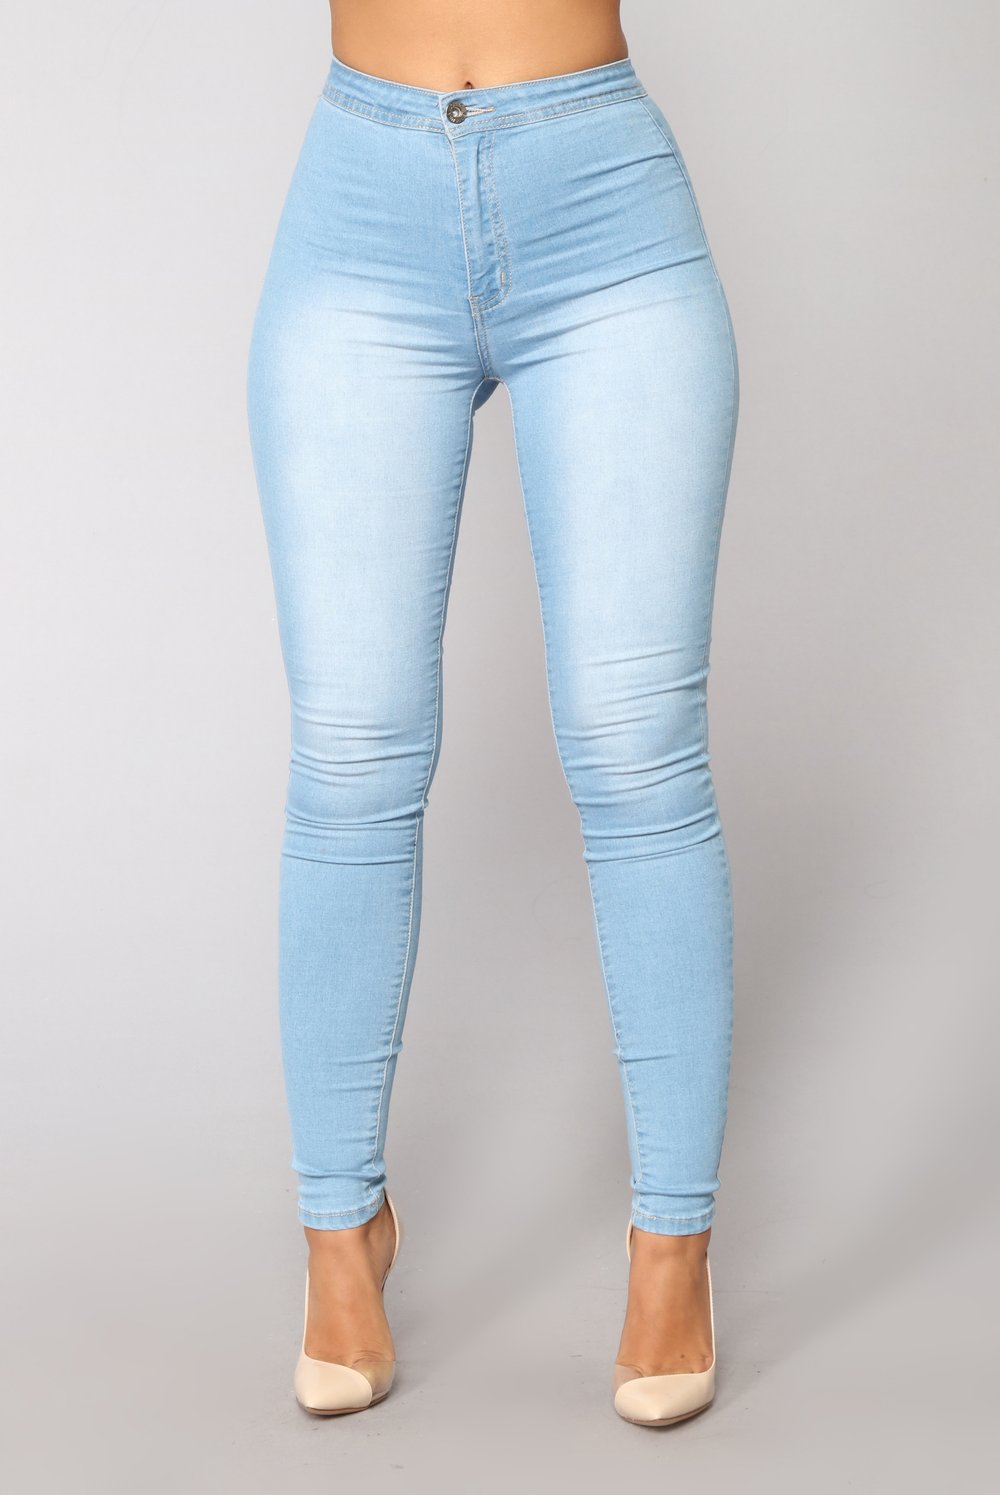 tenue jean bleu clair